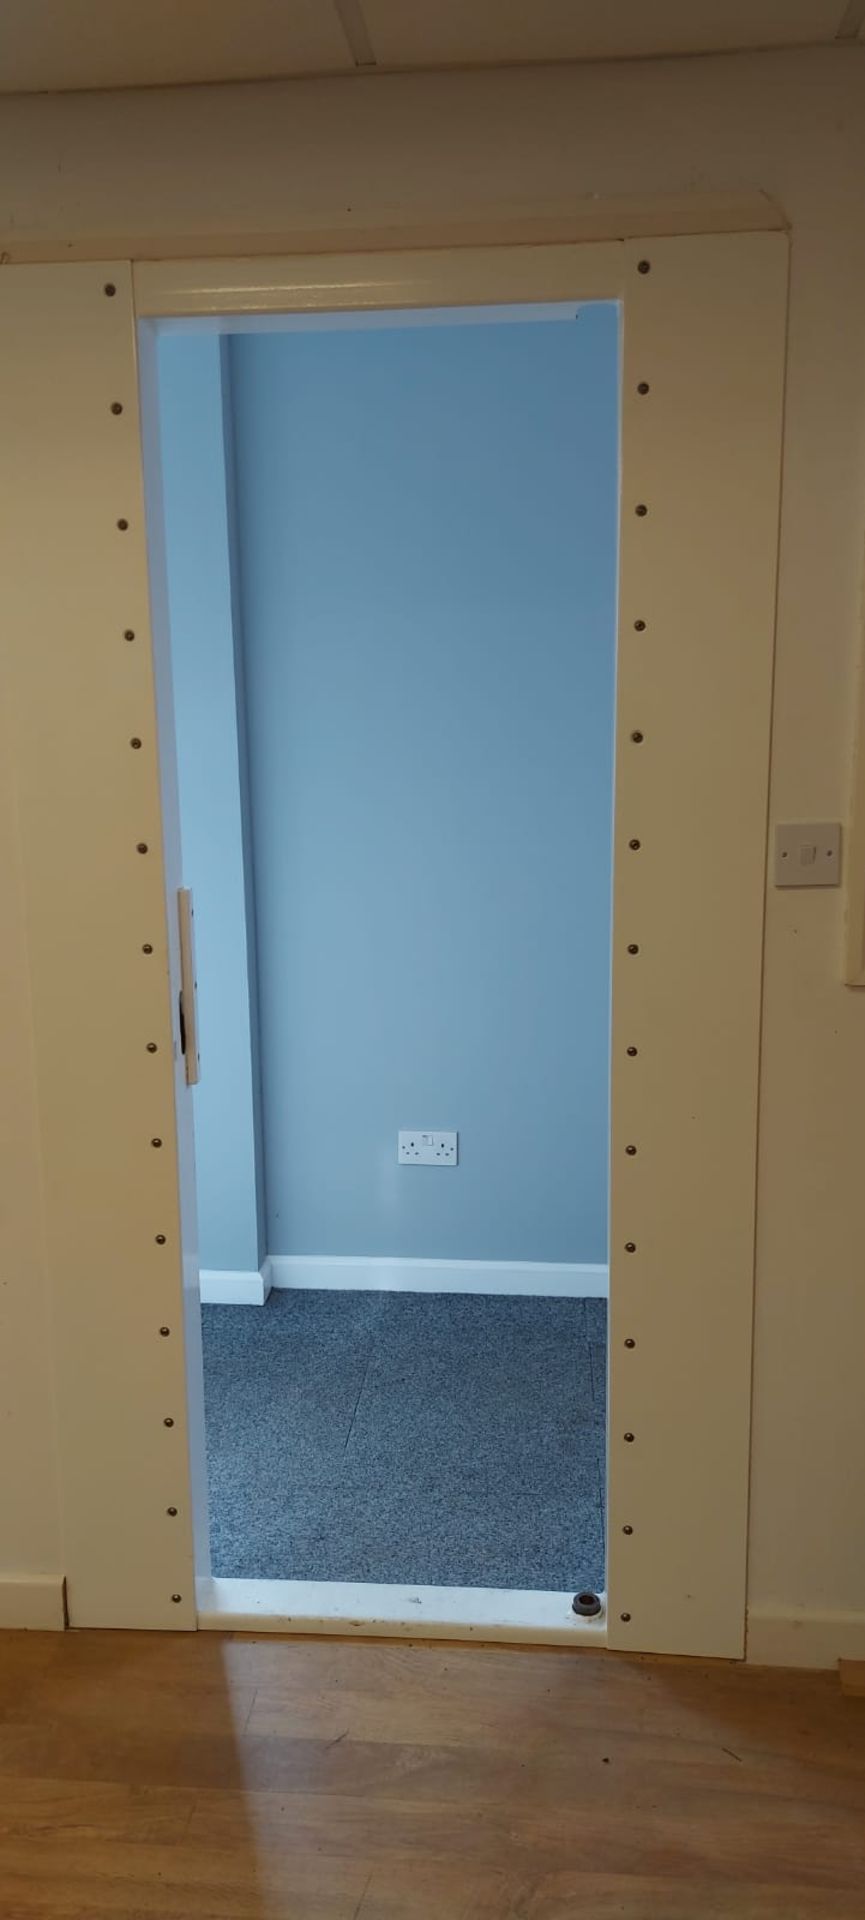 HEAVY STEEL CELL DOOR & FRAME To fit door opening of 2050mm x 930mm, NO RESERVE *NO VAT* - Image 9 of 9